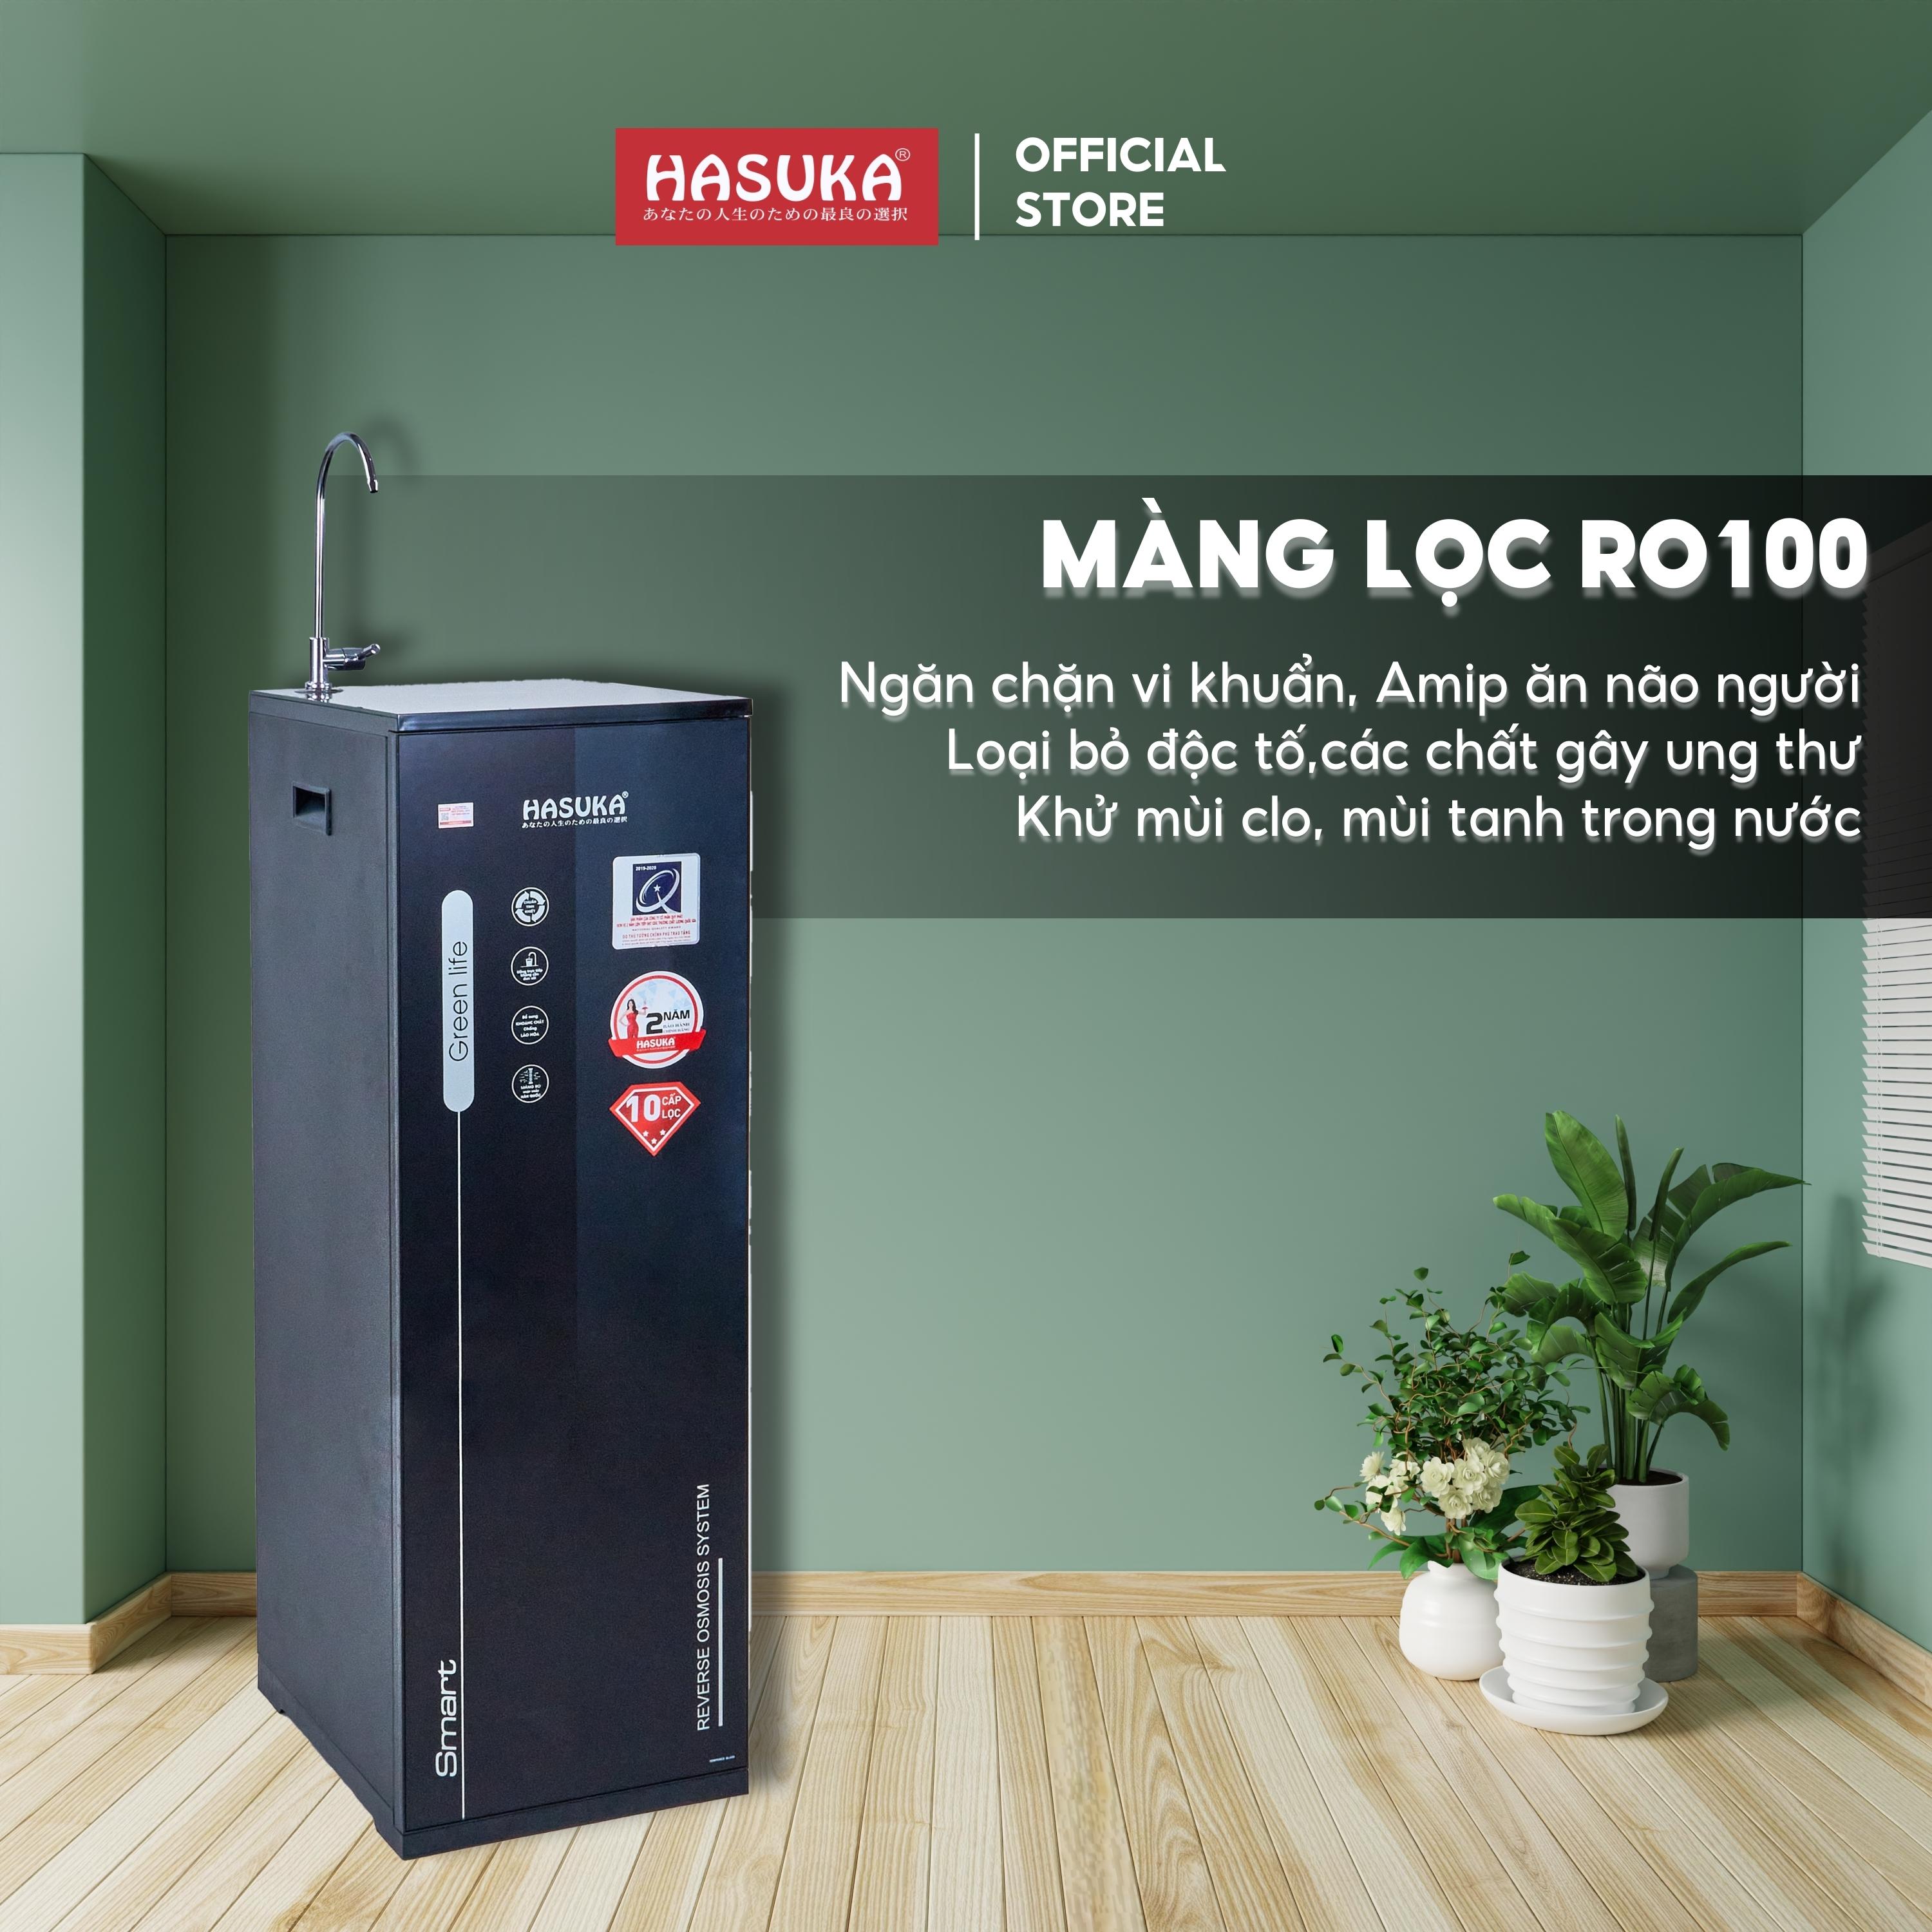 Máy lọc nước HASUKA HSK-RO 110 CTO Smart Mini công suất lọc 15L/h giúp loại bỏ tạp chất khử mùi hôi tanh - HÀNG CHÍNH HÃNG